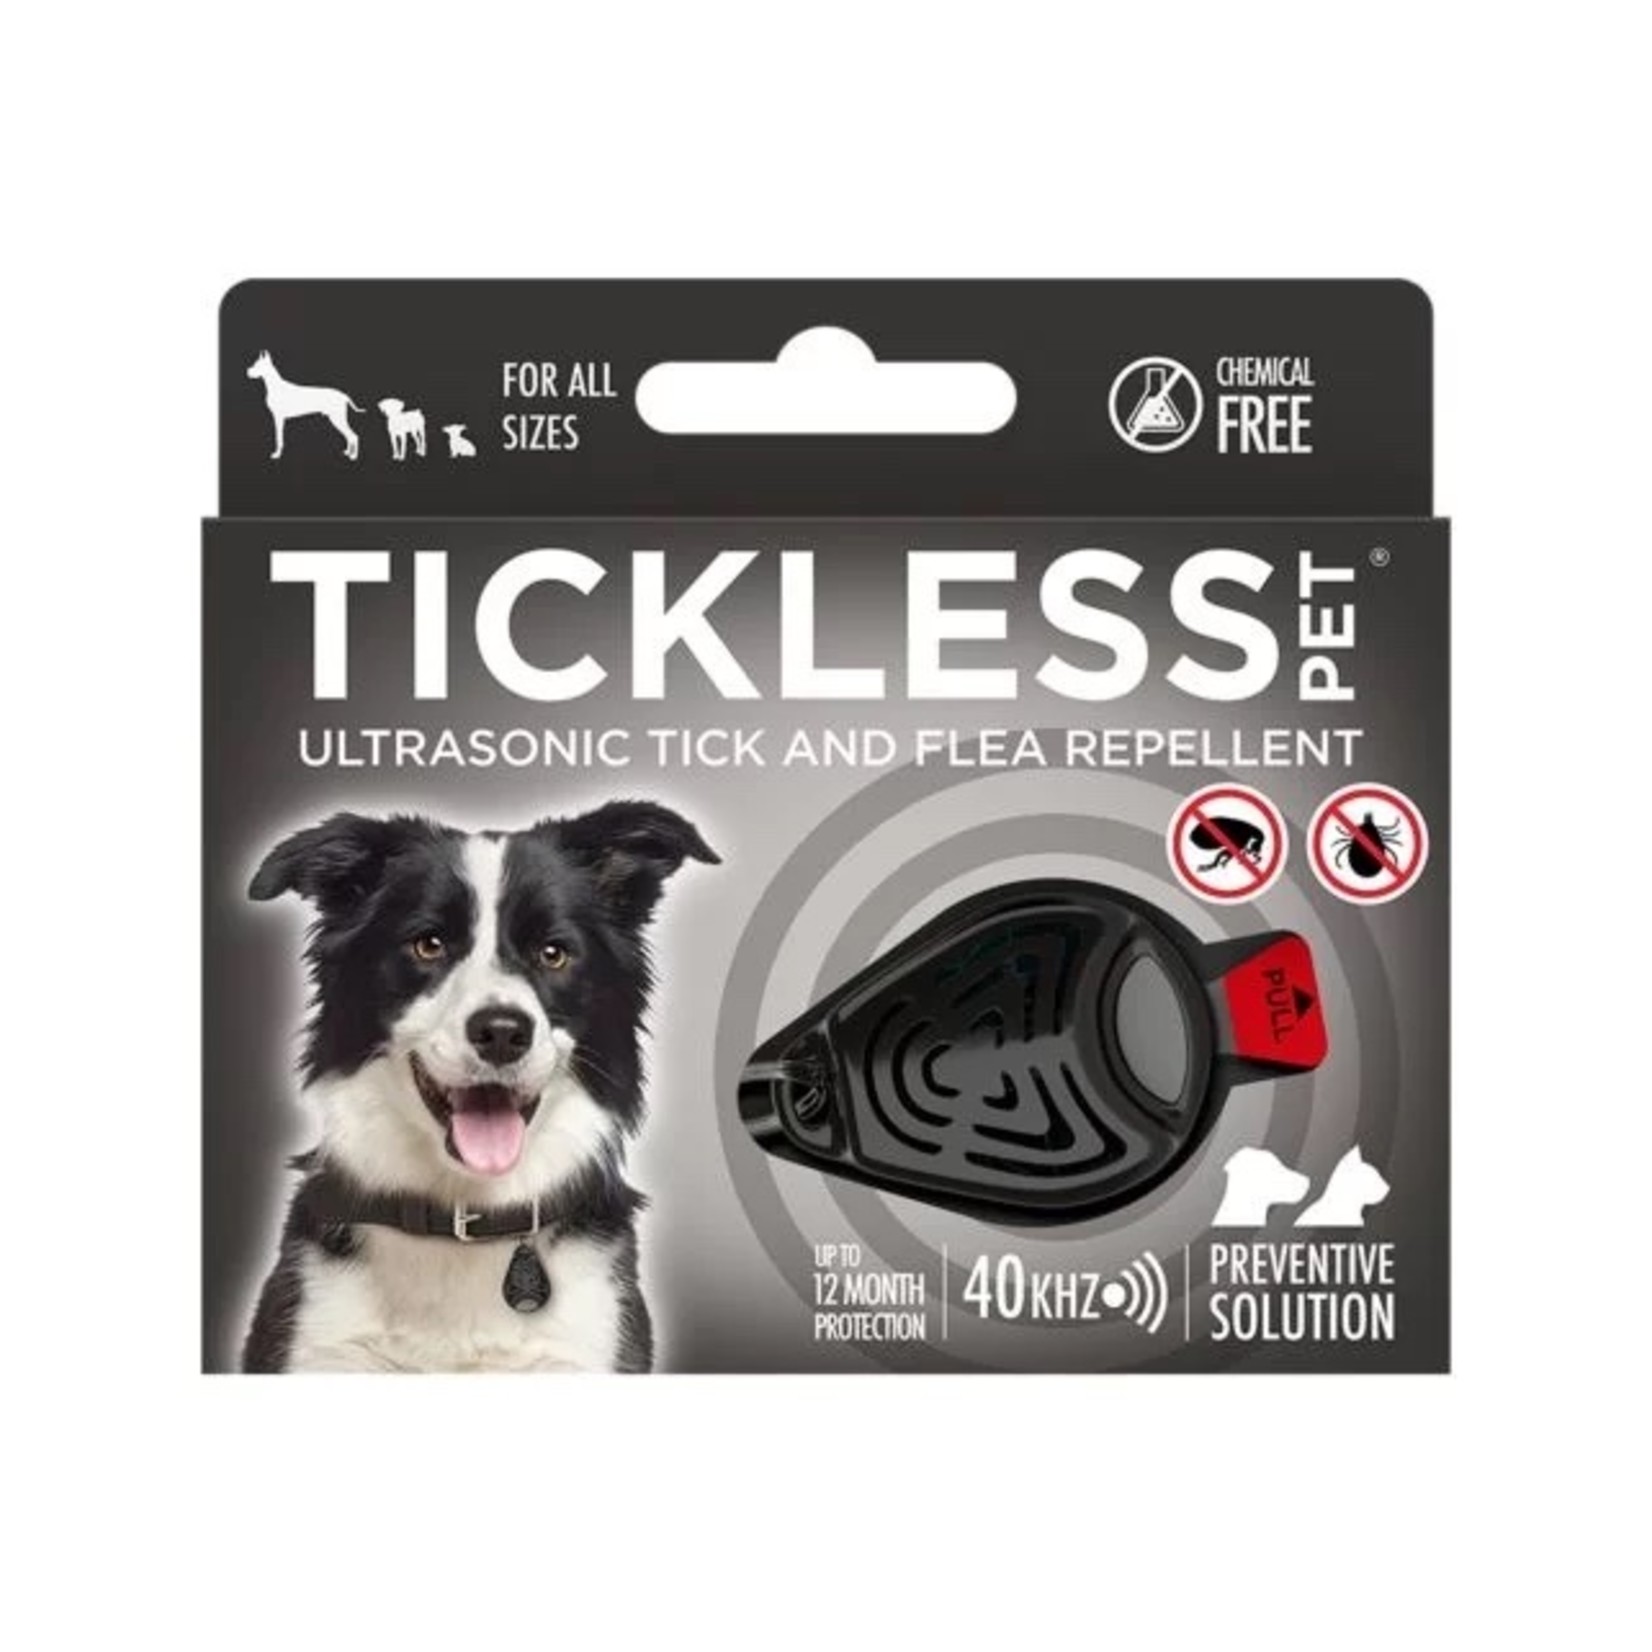 Tickless Tickless Pet